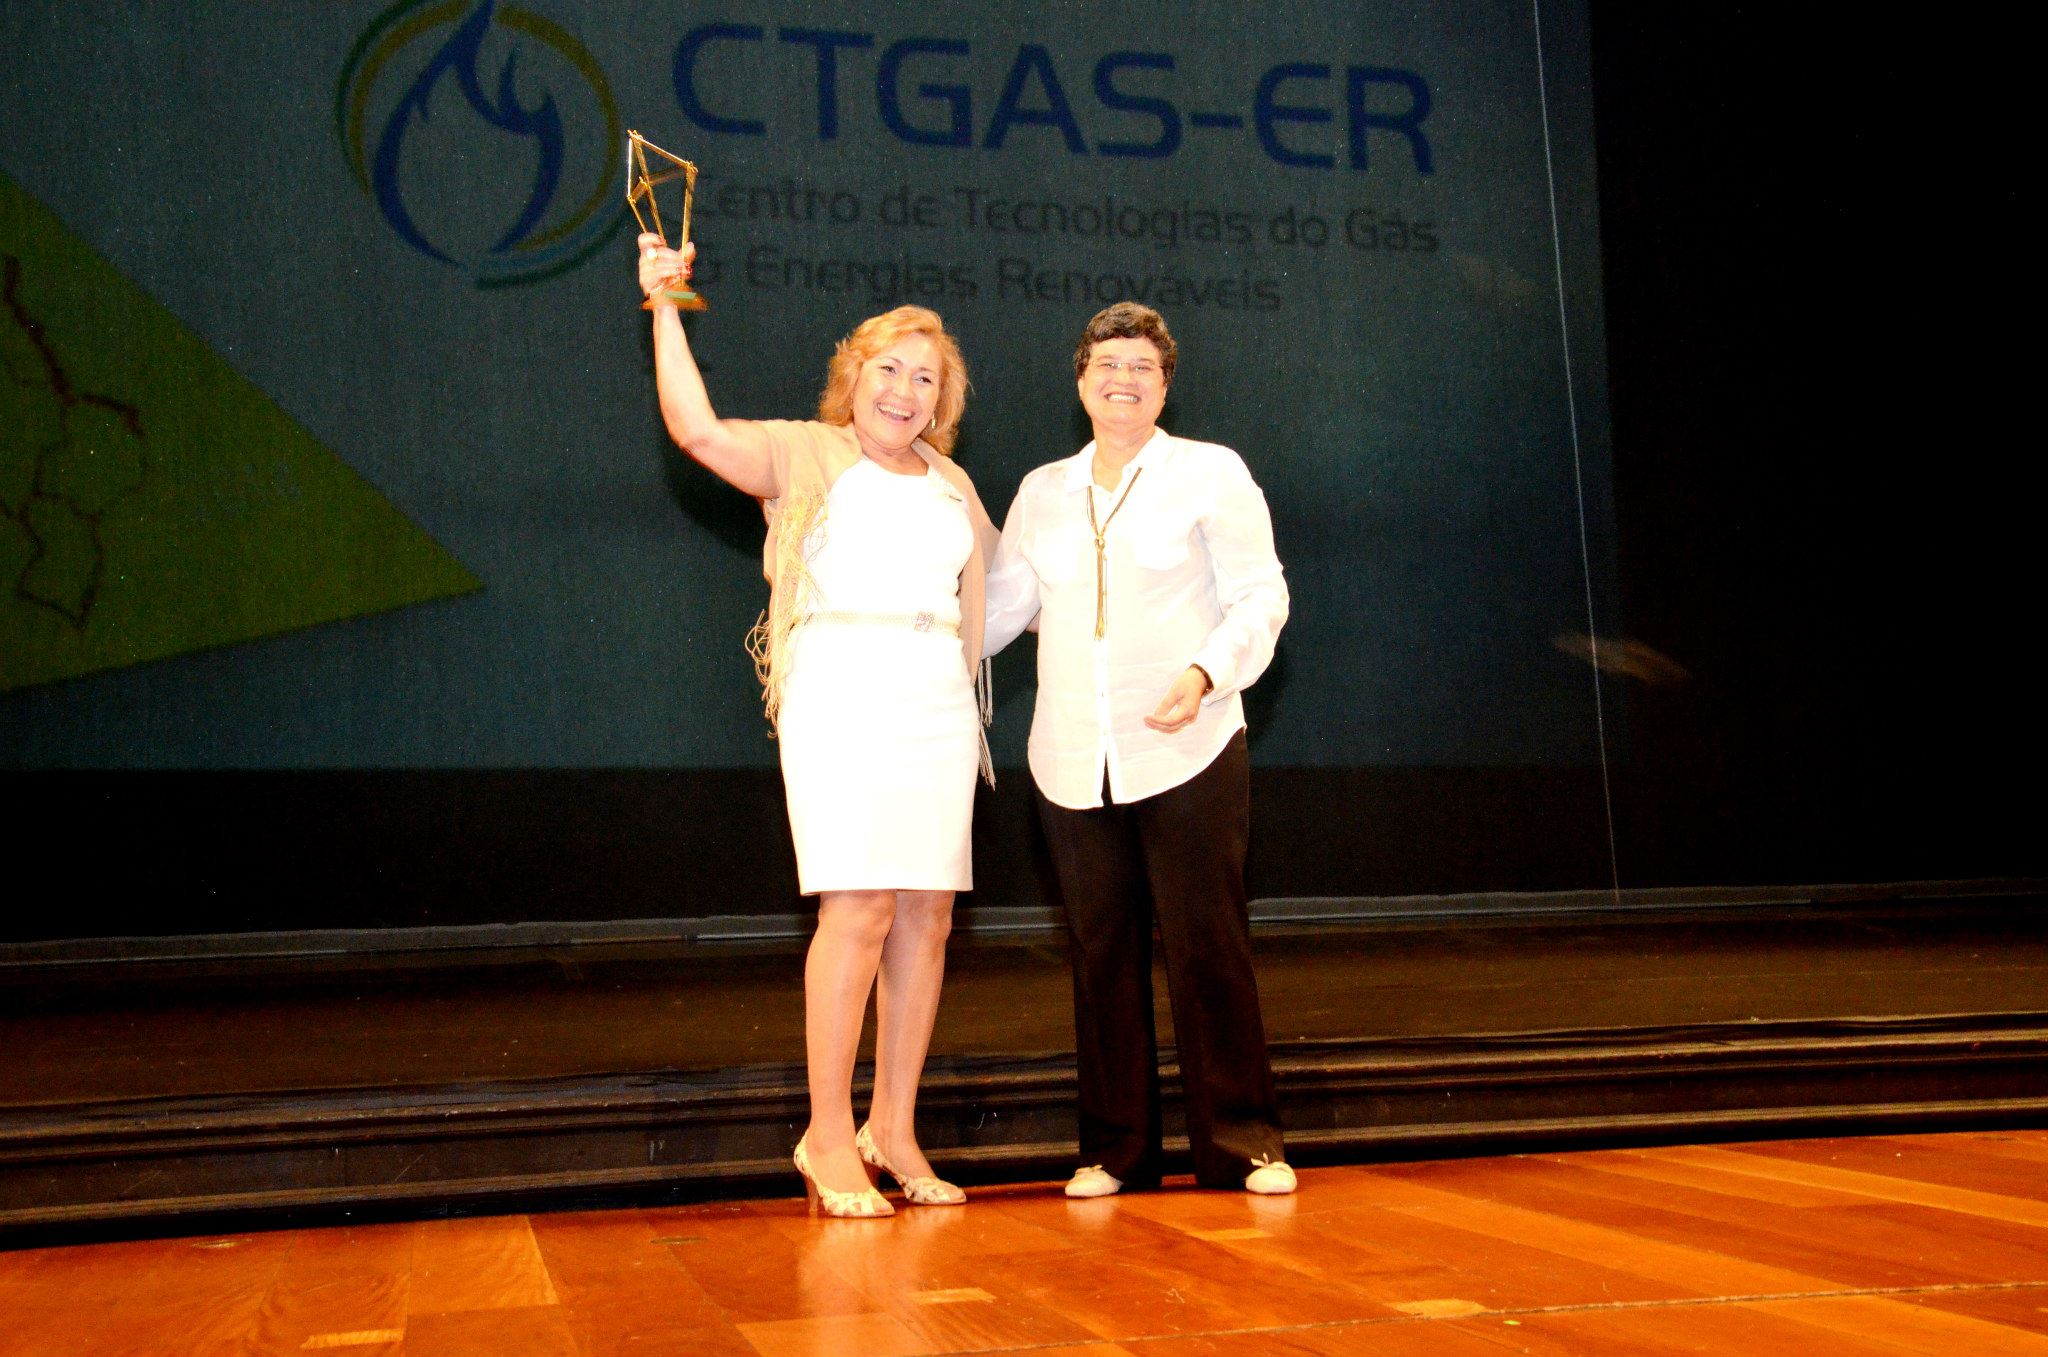 O CTGás-ER foi o vencedor da Categoria ICT da Região Nordeste